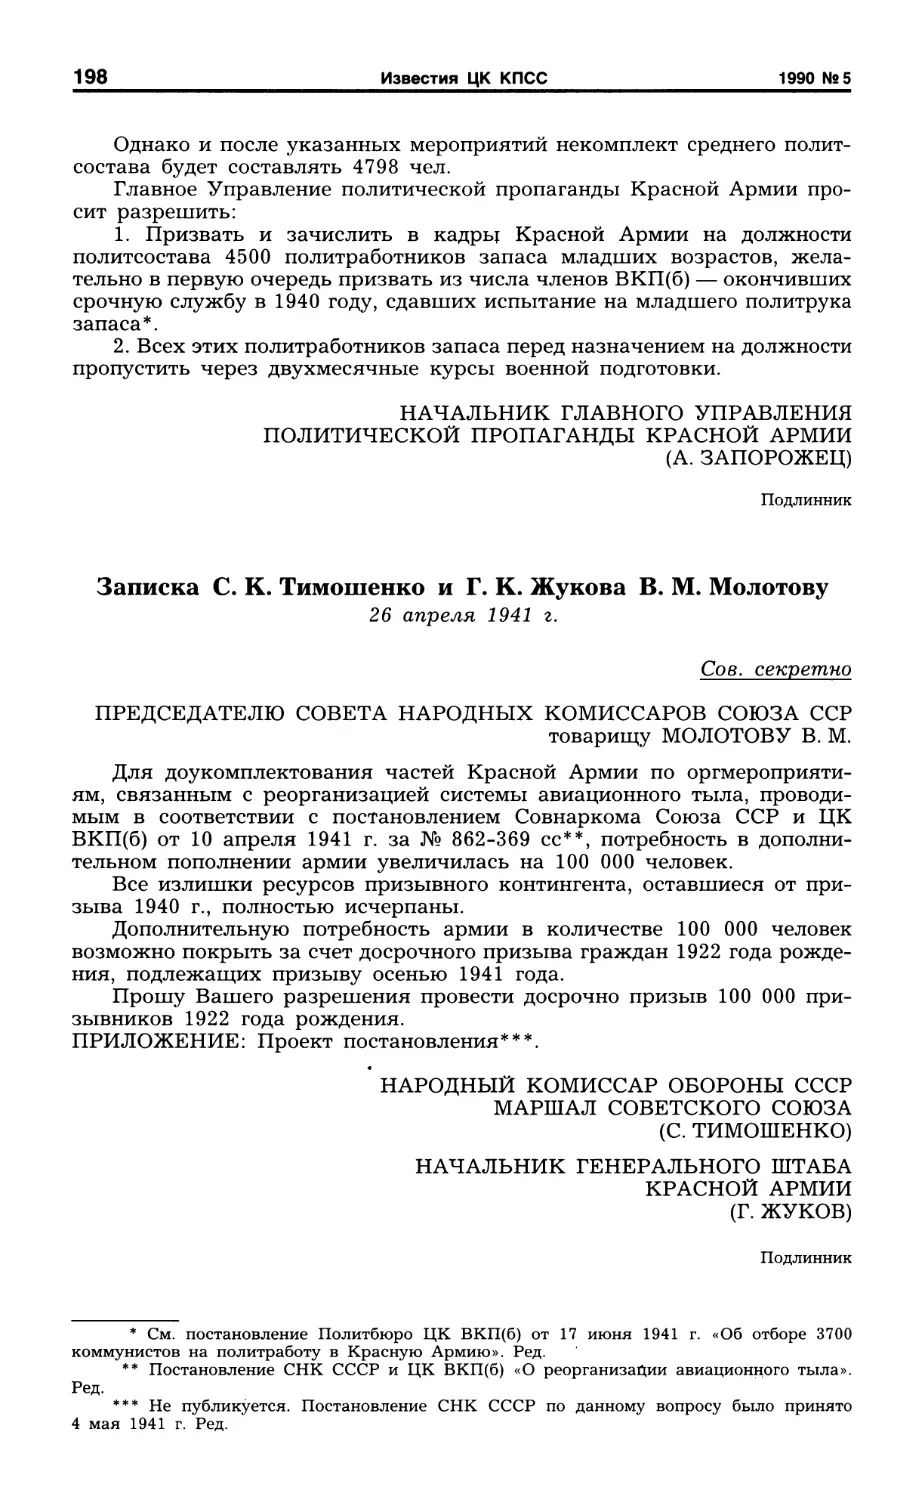 Записка С. К. Тимошенко и Г. К. Жукова В. М. Молотову. 26 апреля 1941 г